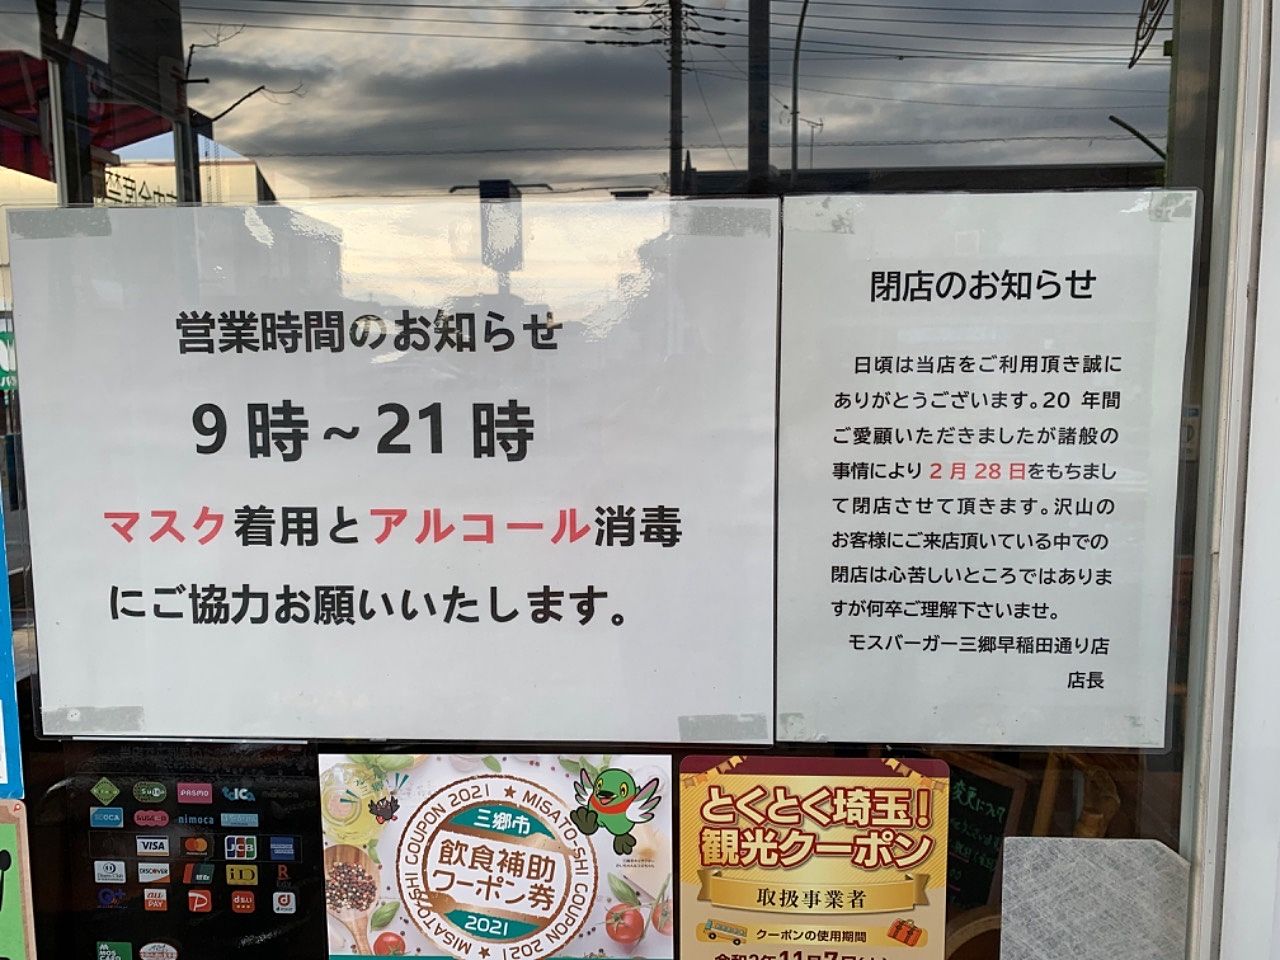 【三郷市食べ歩きブログ】またまた残念なお知らせです…三郷市早稲田2丁目の「モスバーガー三郷早稲田通り店」が2月28日で閉店するそうです。